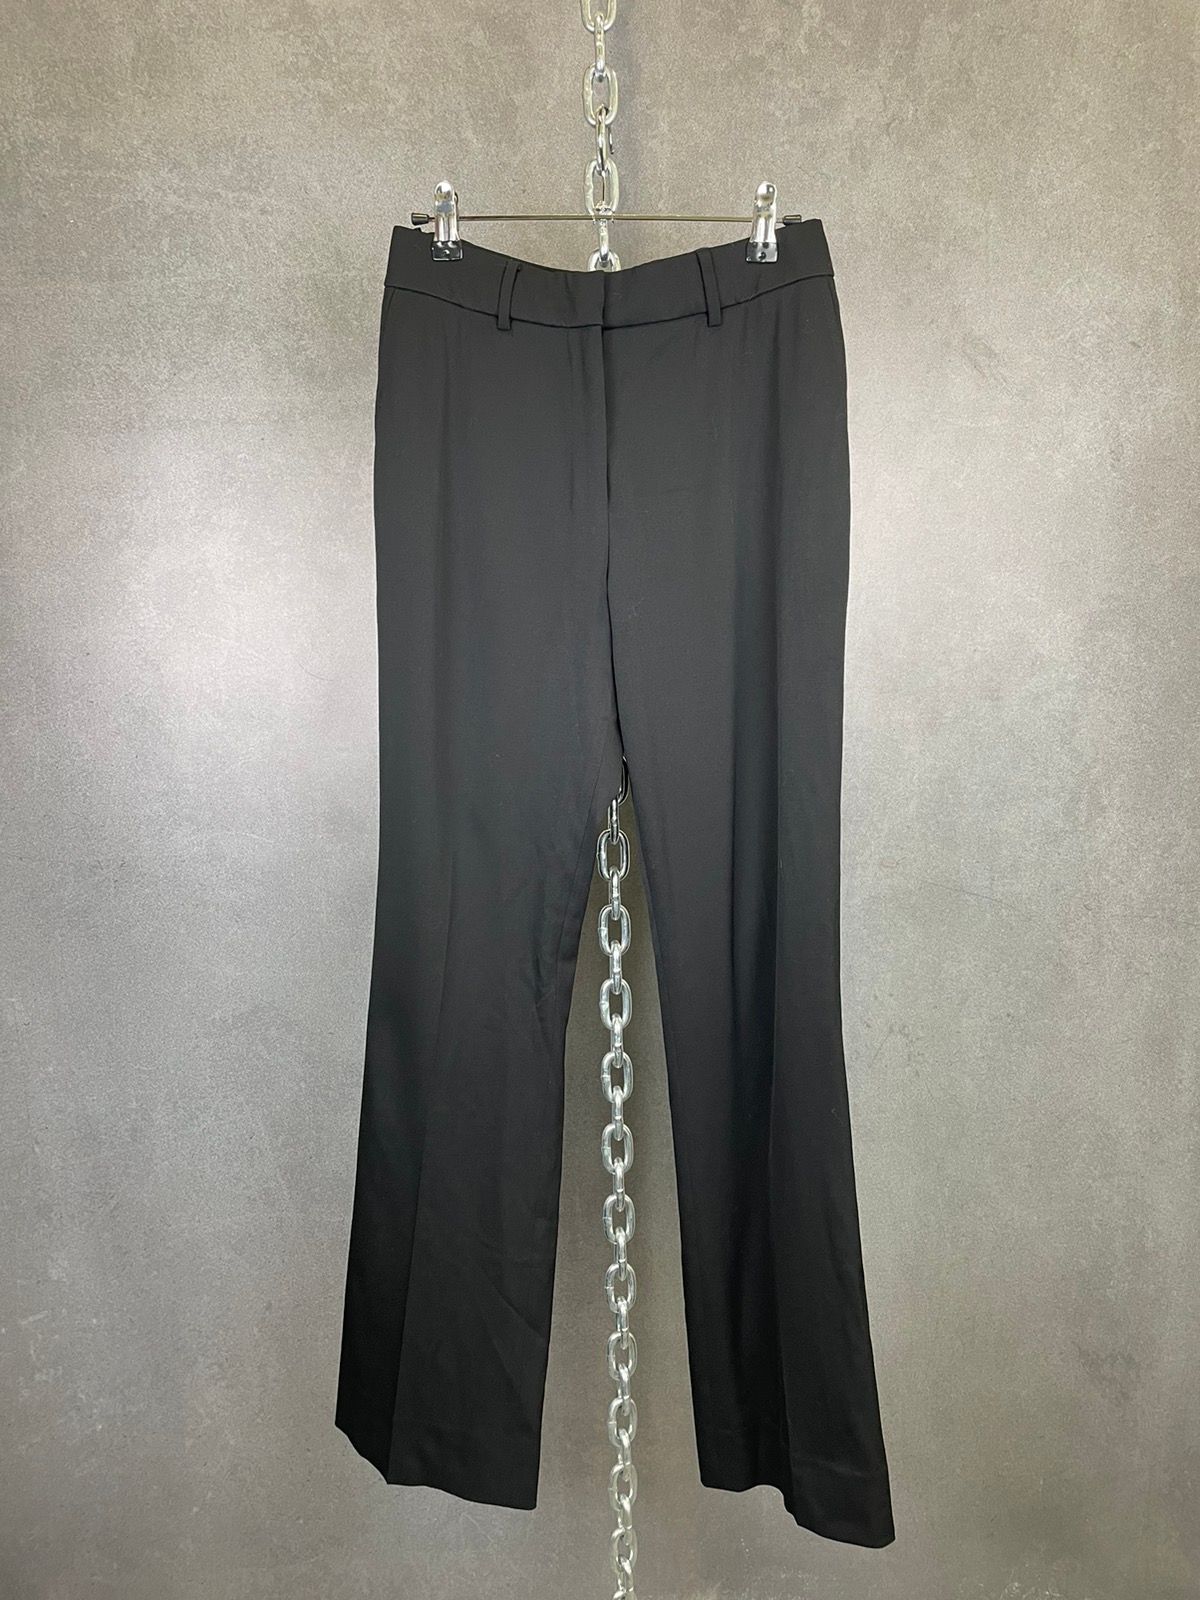 Yves Saint Laurent Vintage Yves Saint Laurent Black Wool Trousers Size 28”x30” Size 28" / US 6 / IT 42 - 1 Preview